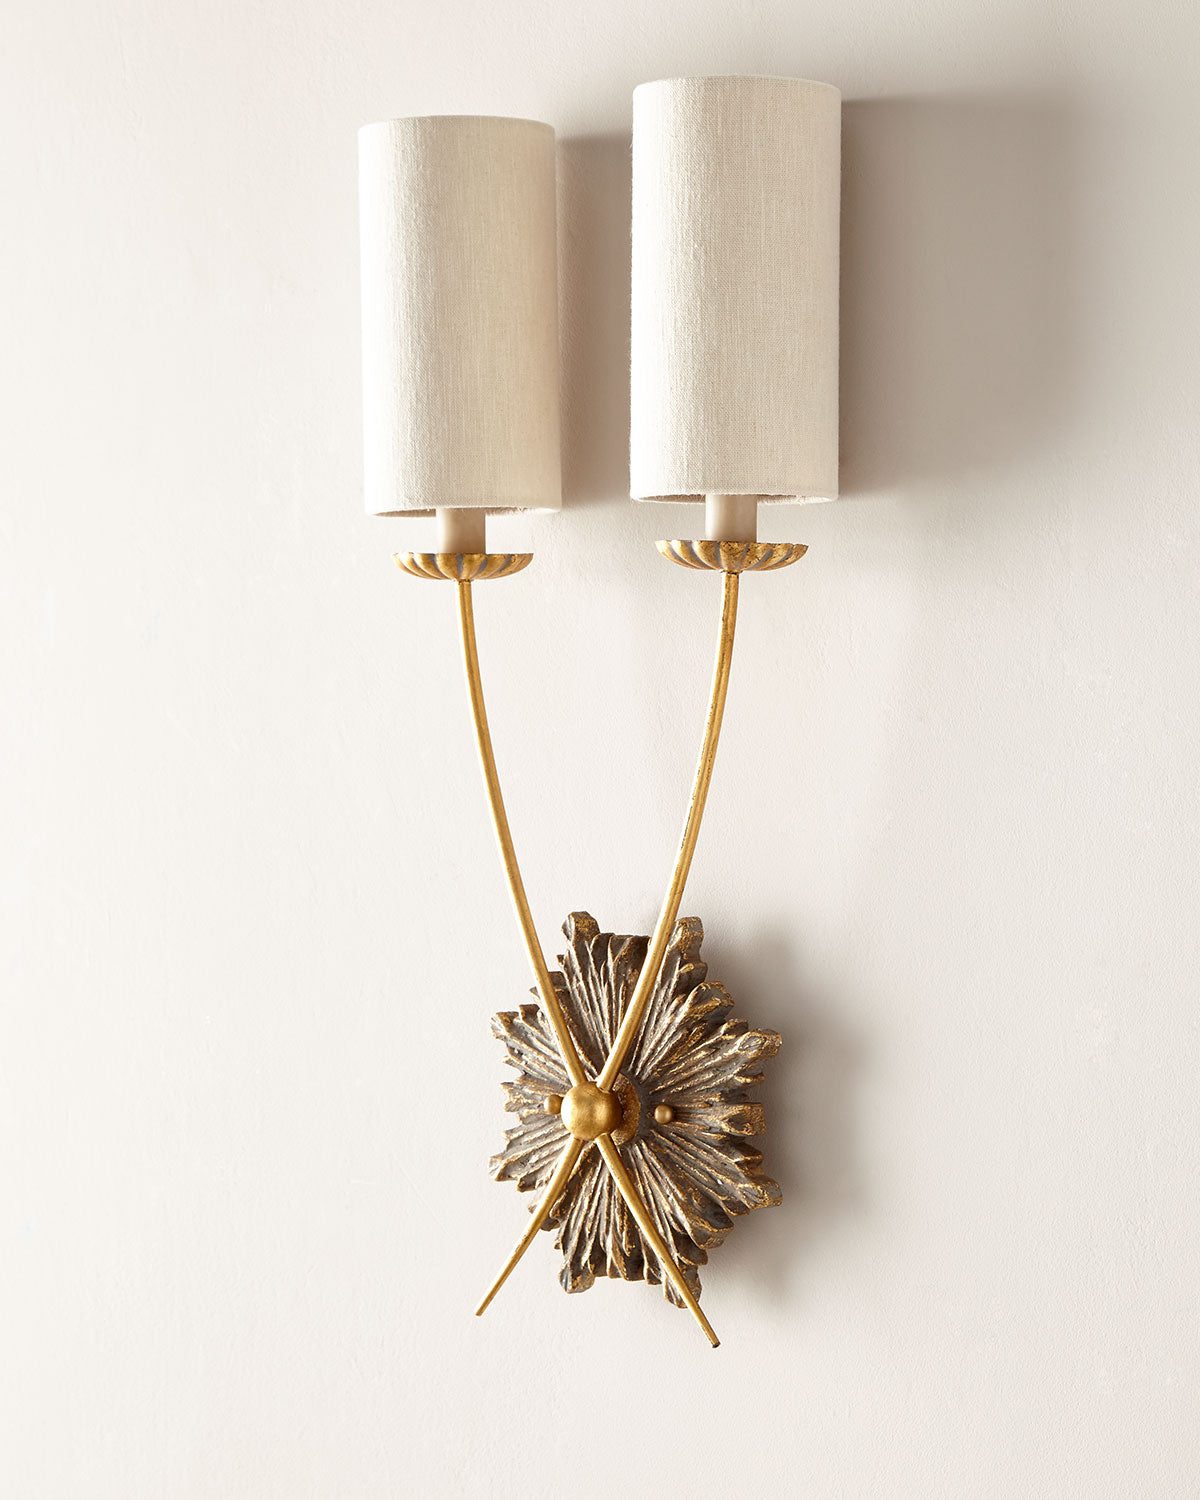 Настенный светильник в французском стиле "Кромвель" с состаренной латунной фурнитурой